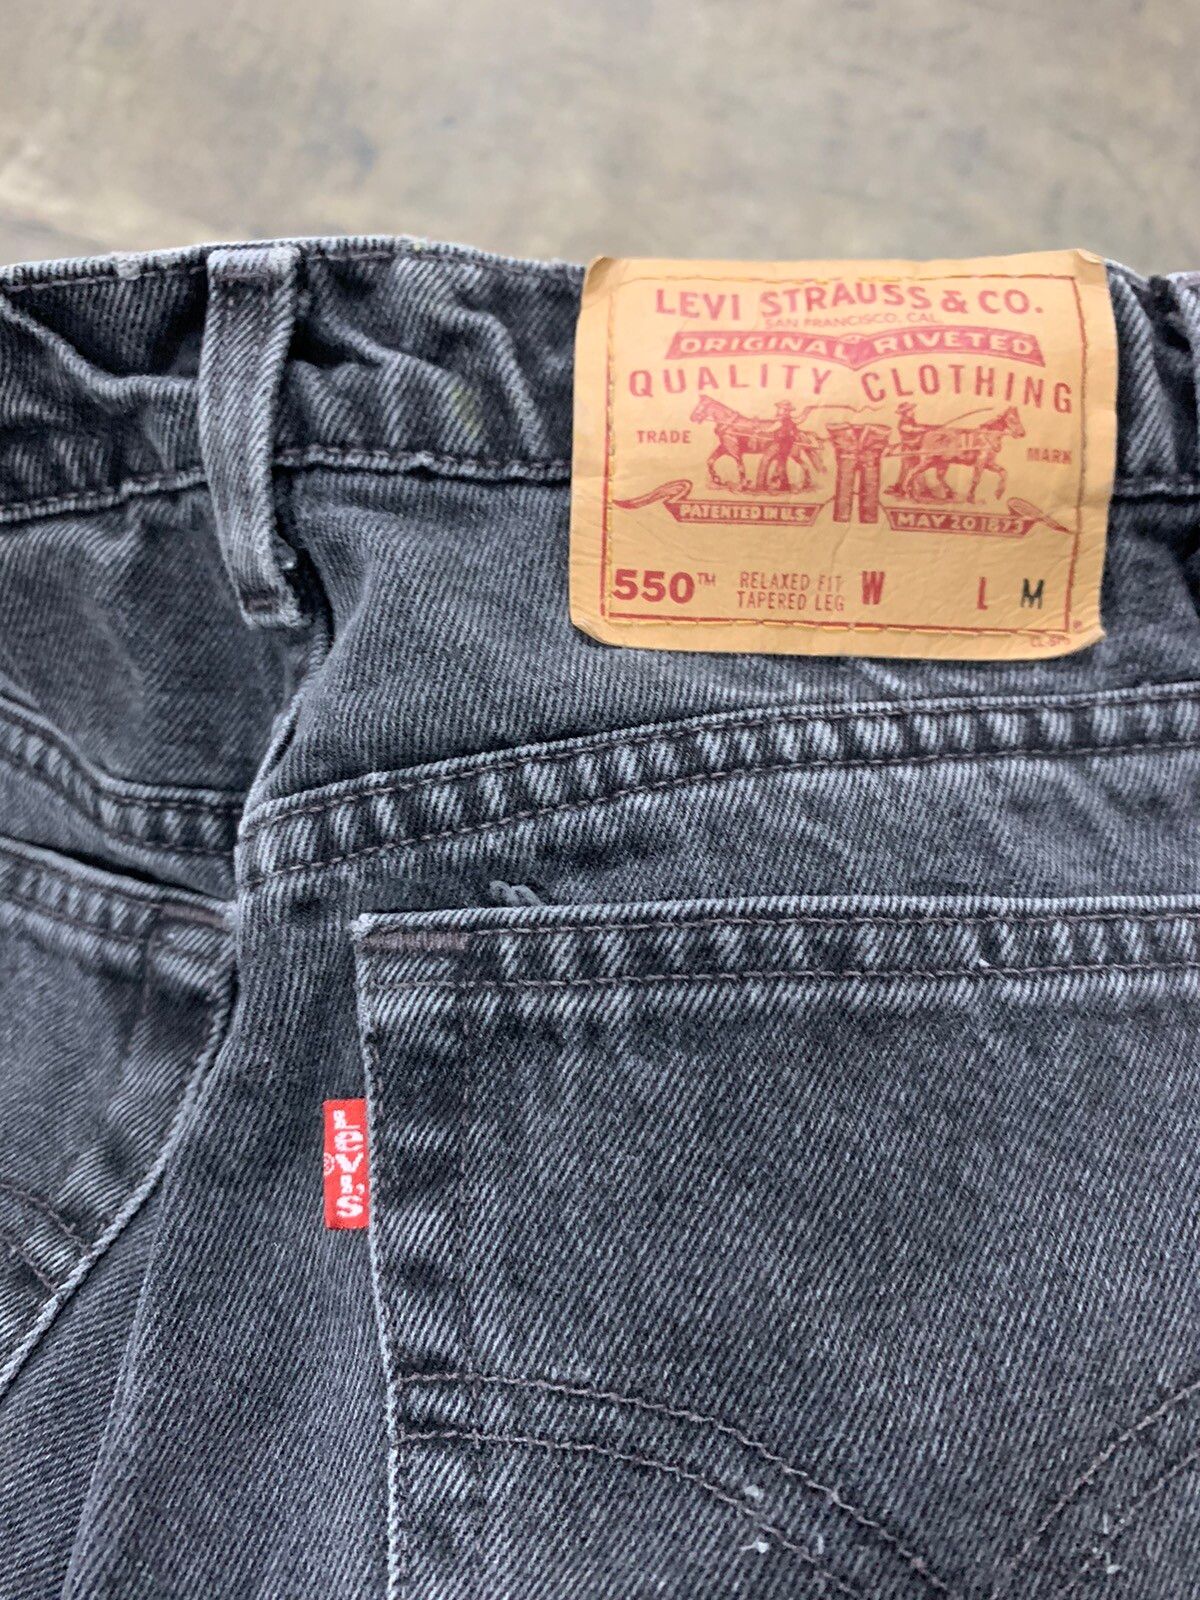 Vintage Vintage 1990s Levi’s 550 Black Jeans Size US 28 / EU 44 - 5 Thumbnail